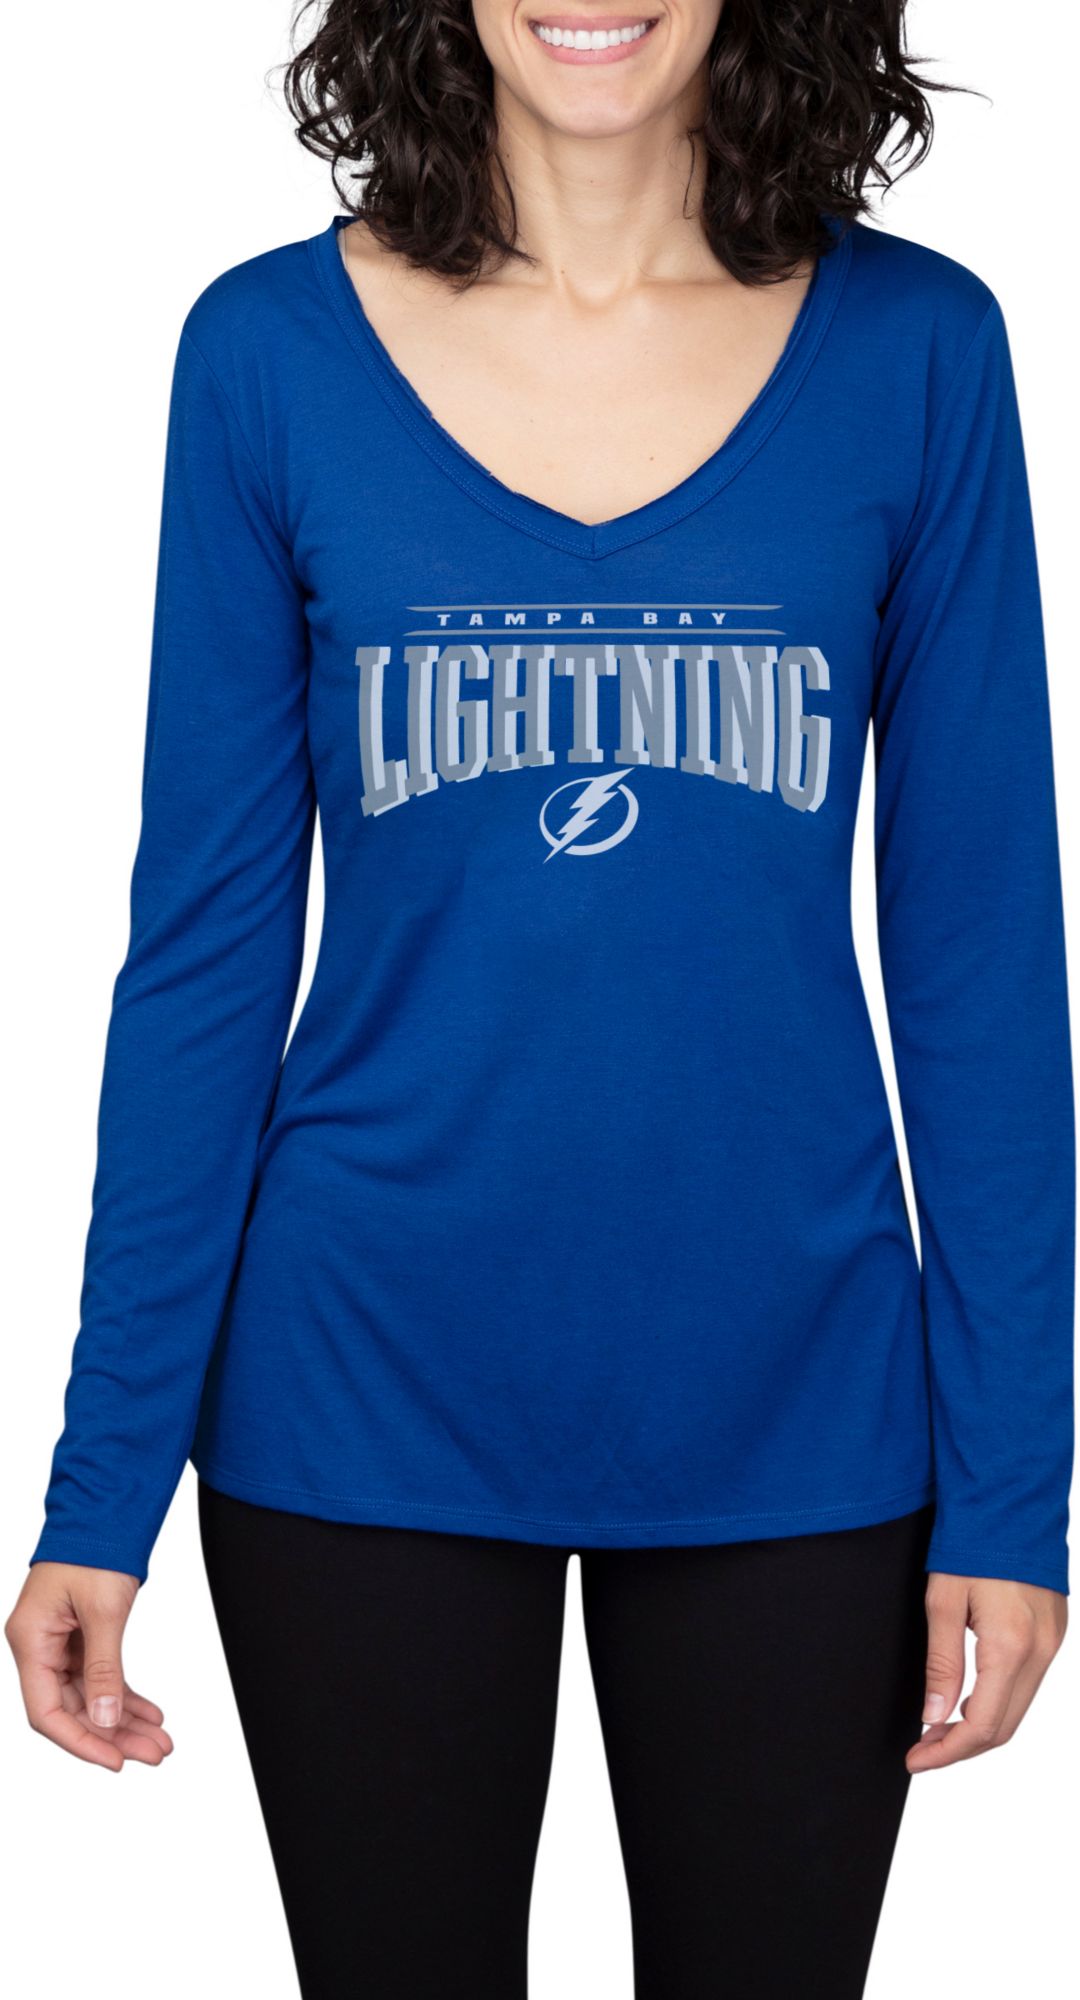 women's lightning shirt